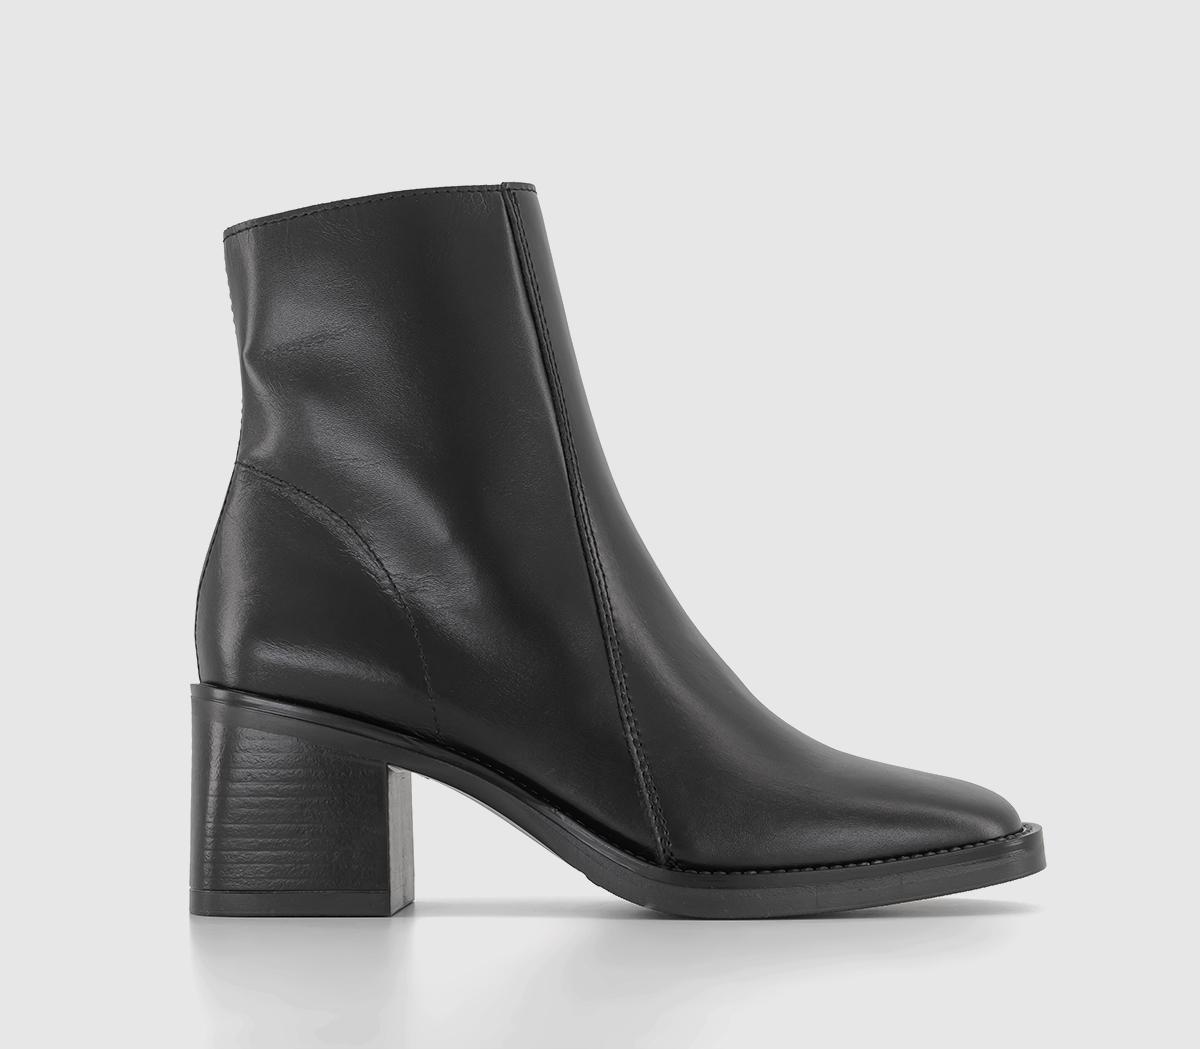 OFFICEAnnabella Square Toe Leather Block Heel BootsBlack Leather